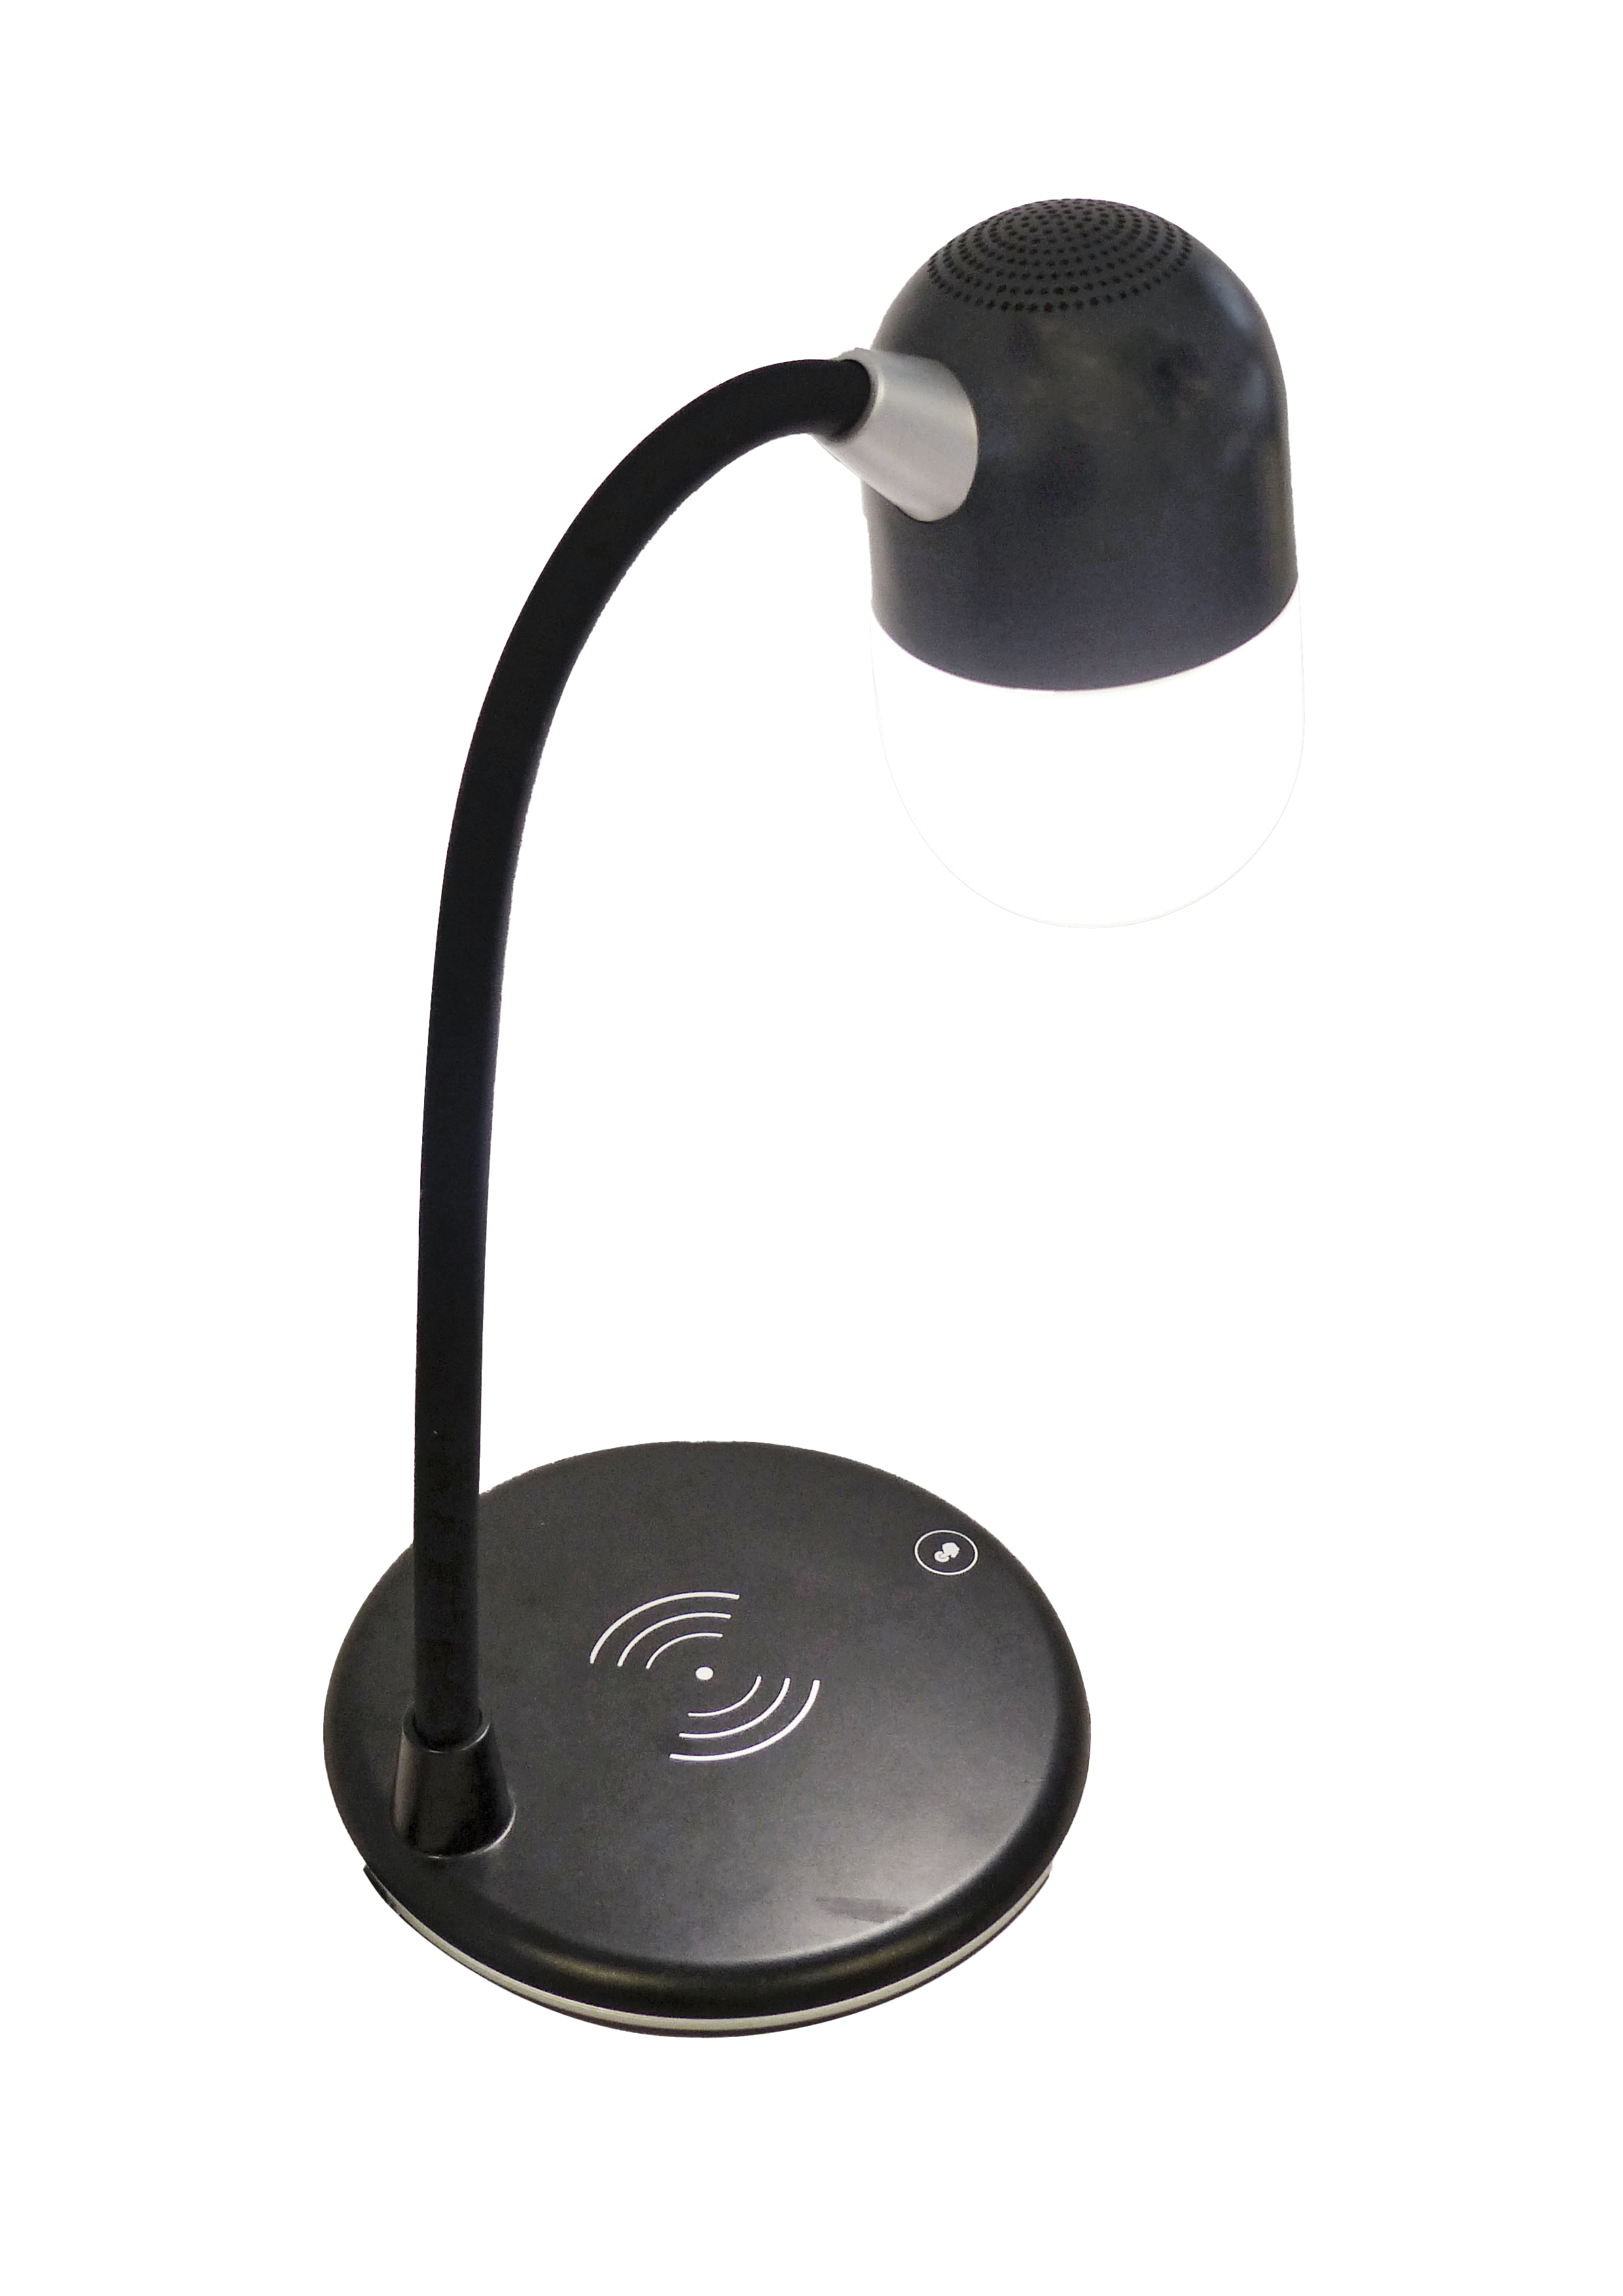 Lampe de bureau LED multifonction avec chargeur sans fil intégré 5W -  BuroStock Réunion